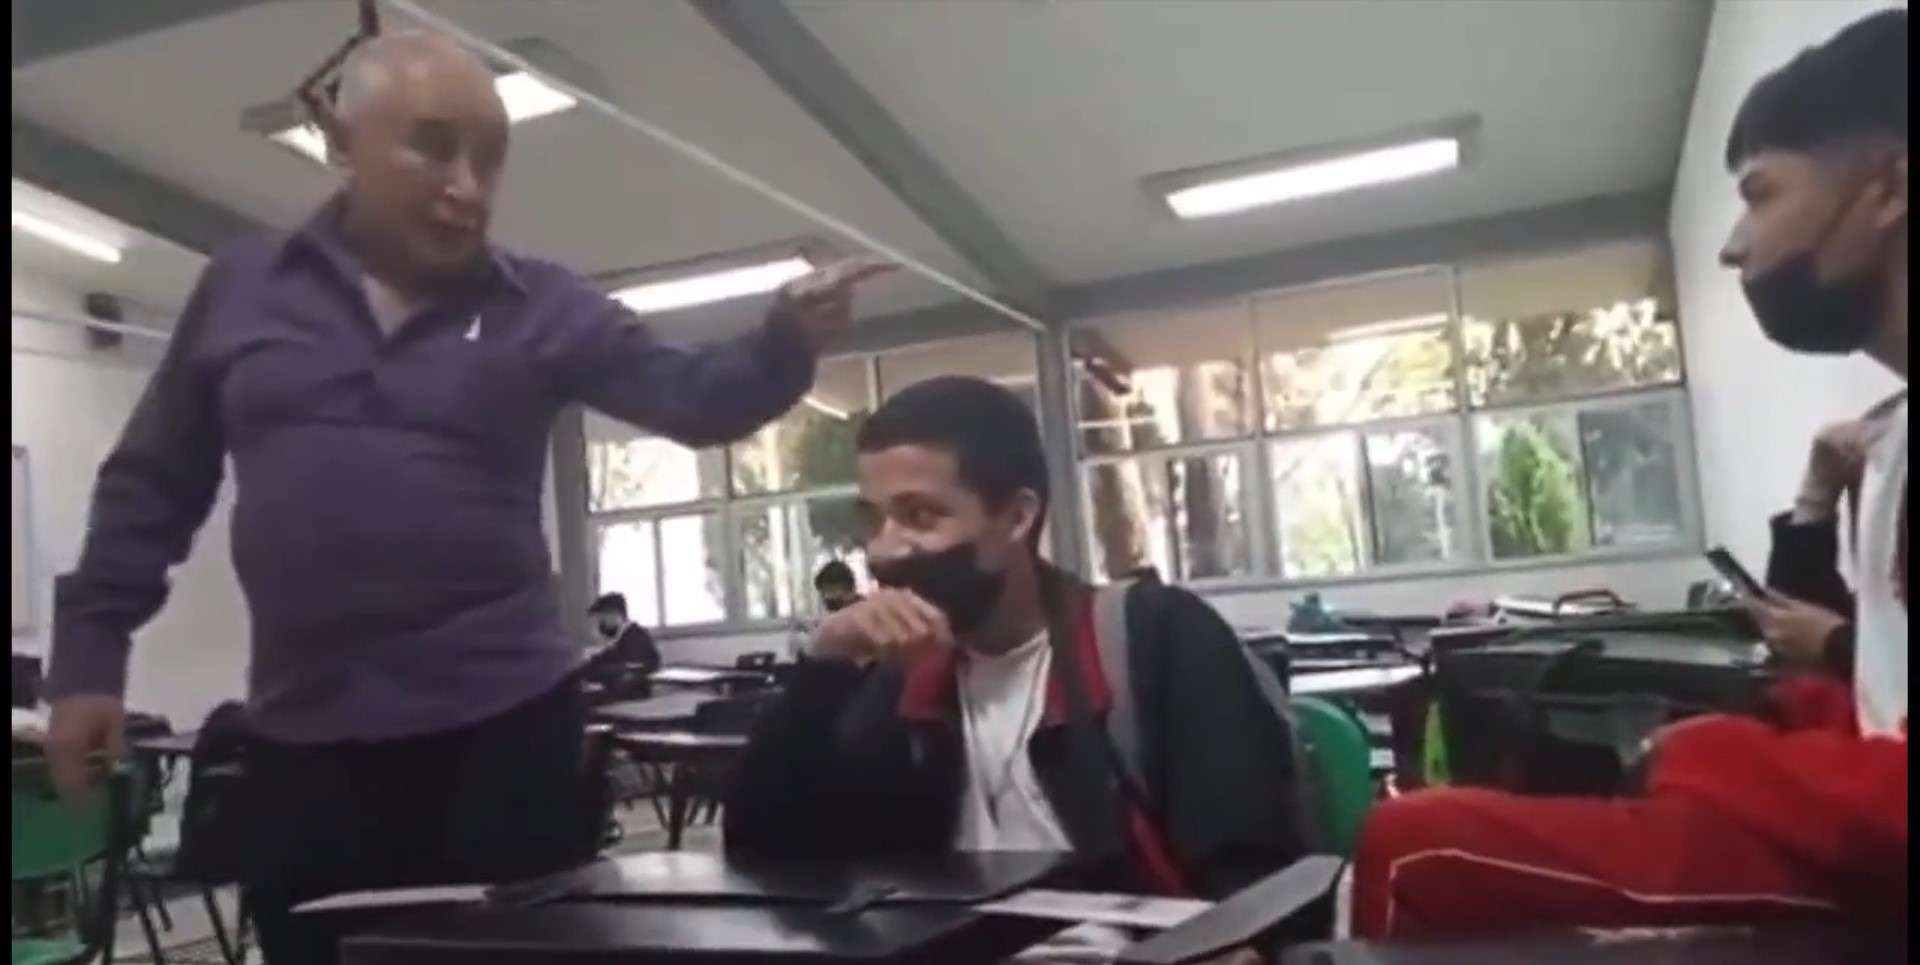 El docente amenazó con golpear a su alumno si no guardaba silencio (Captura de pantalla)